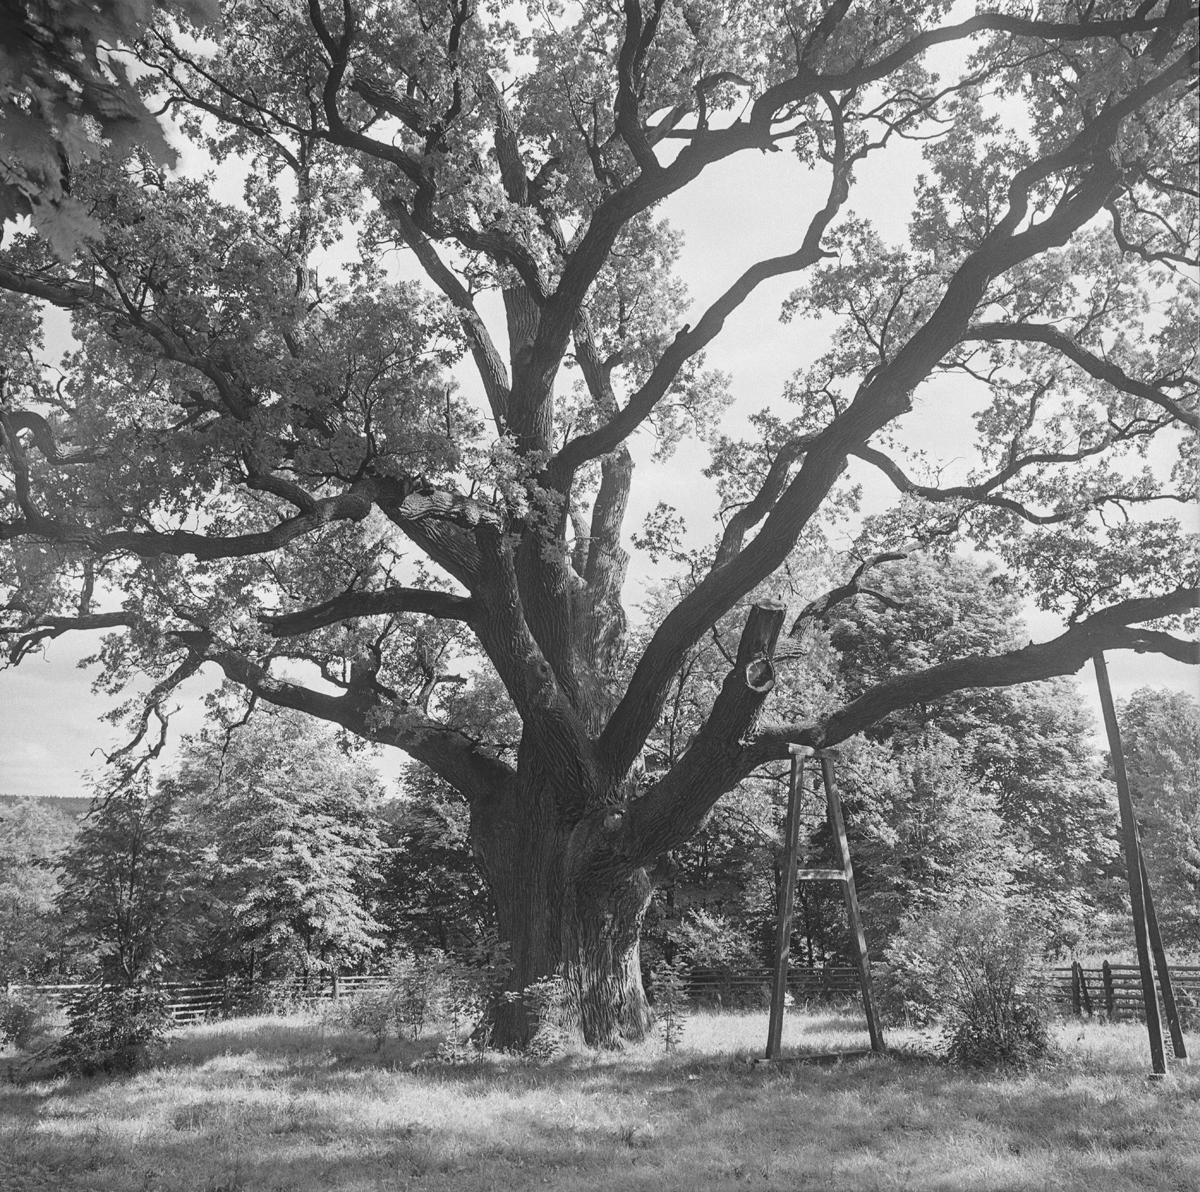 Bartek – the legendary oak